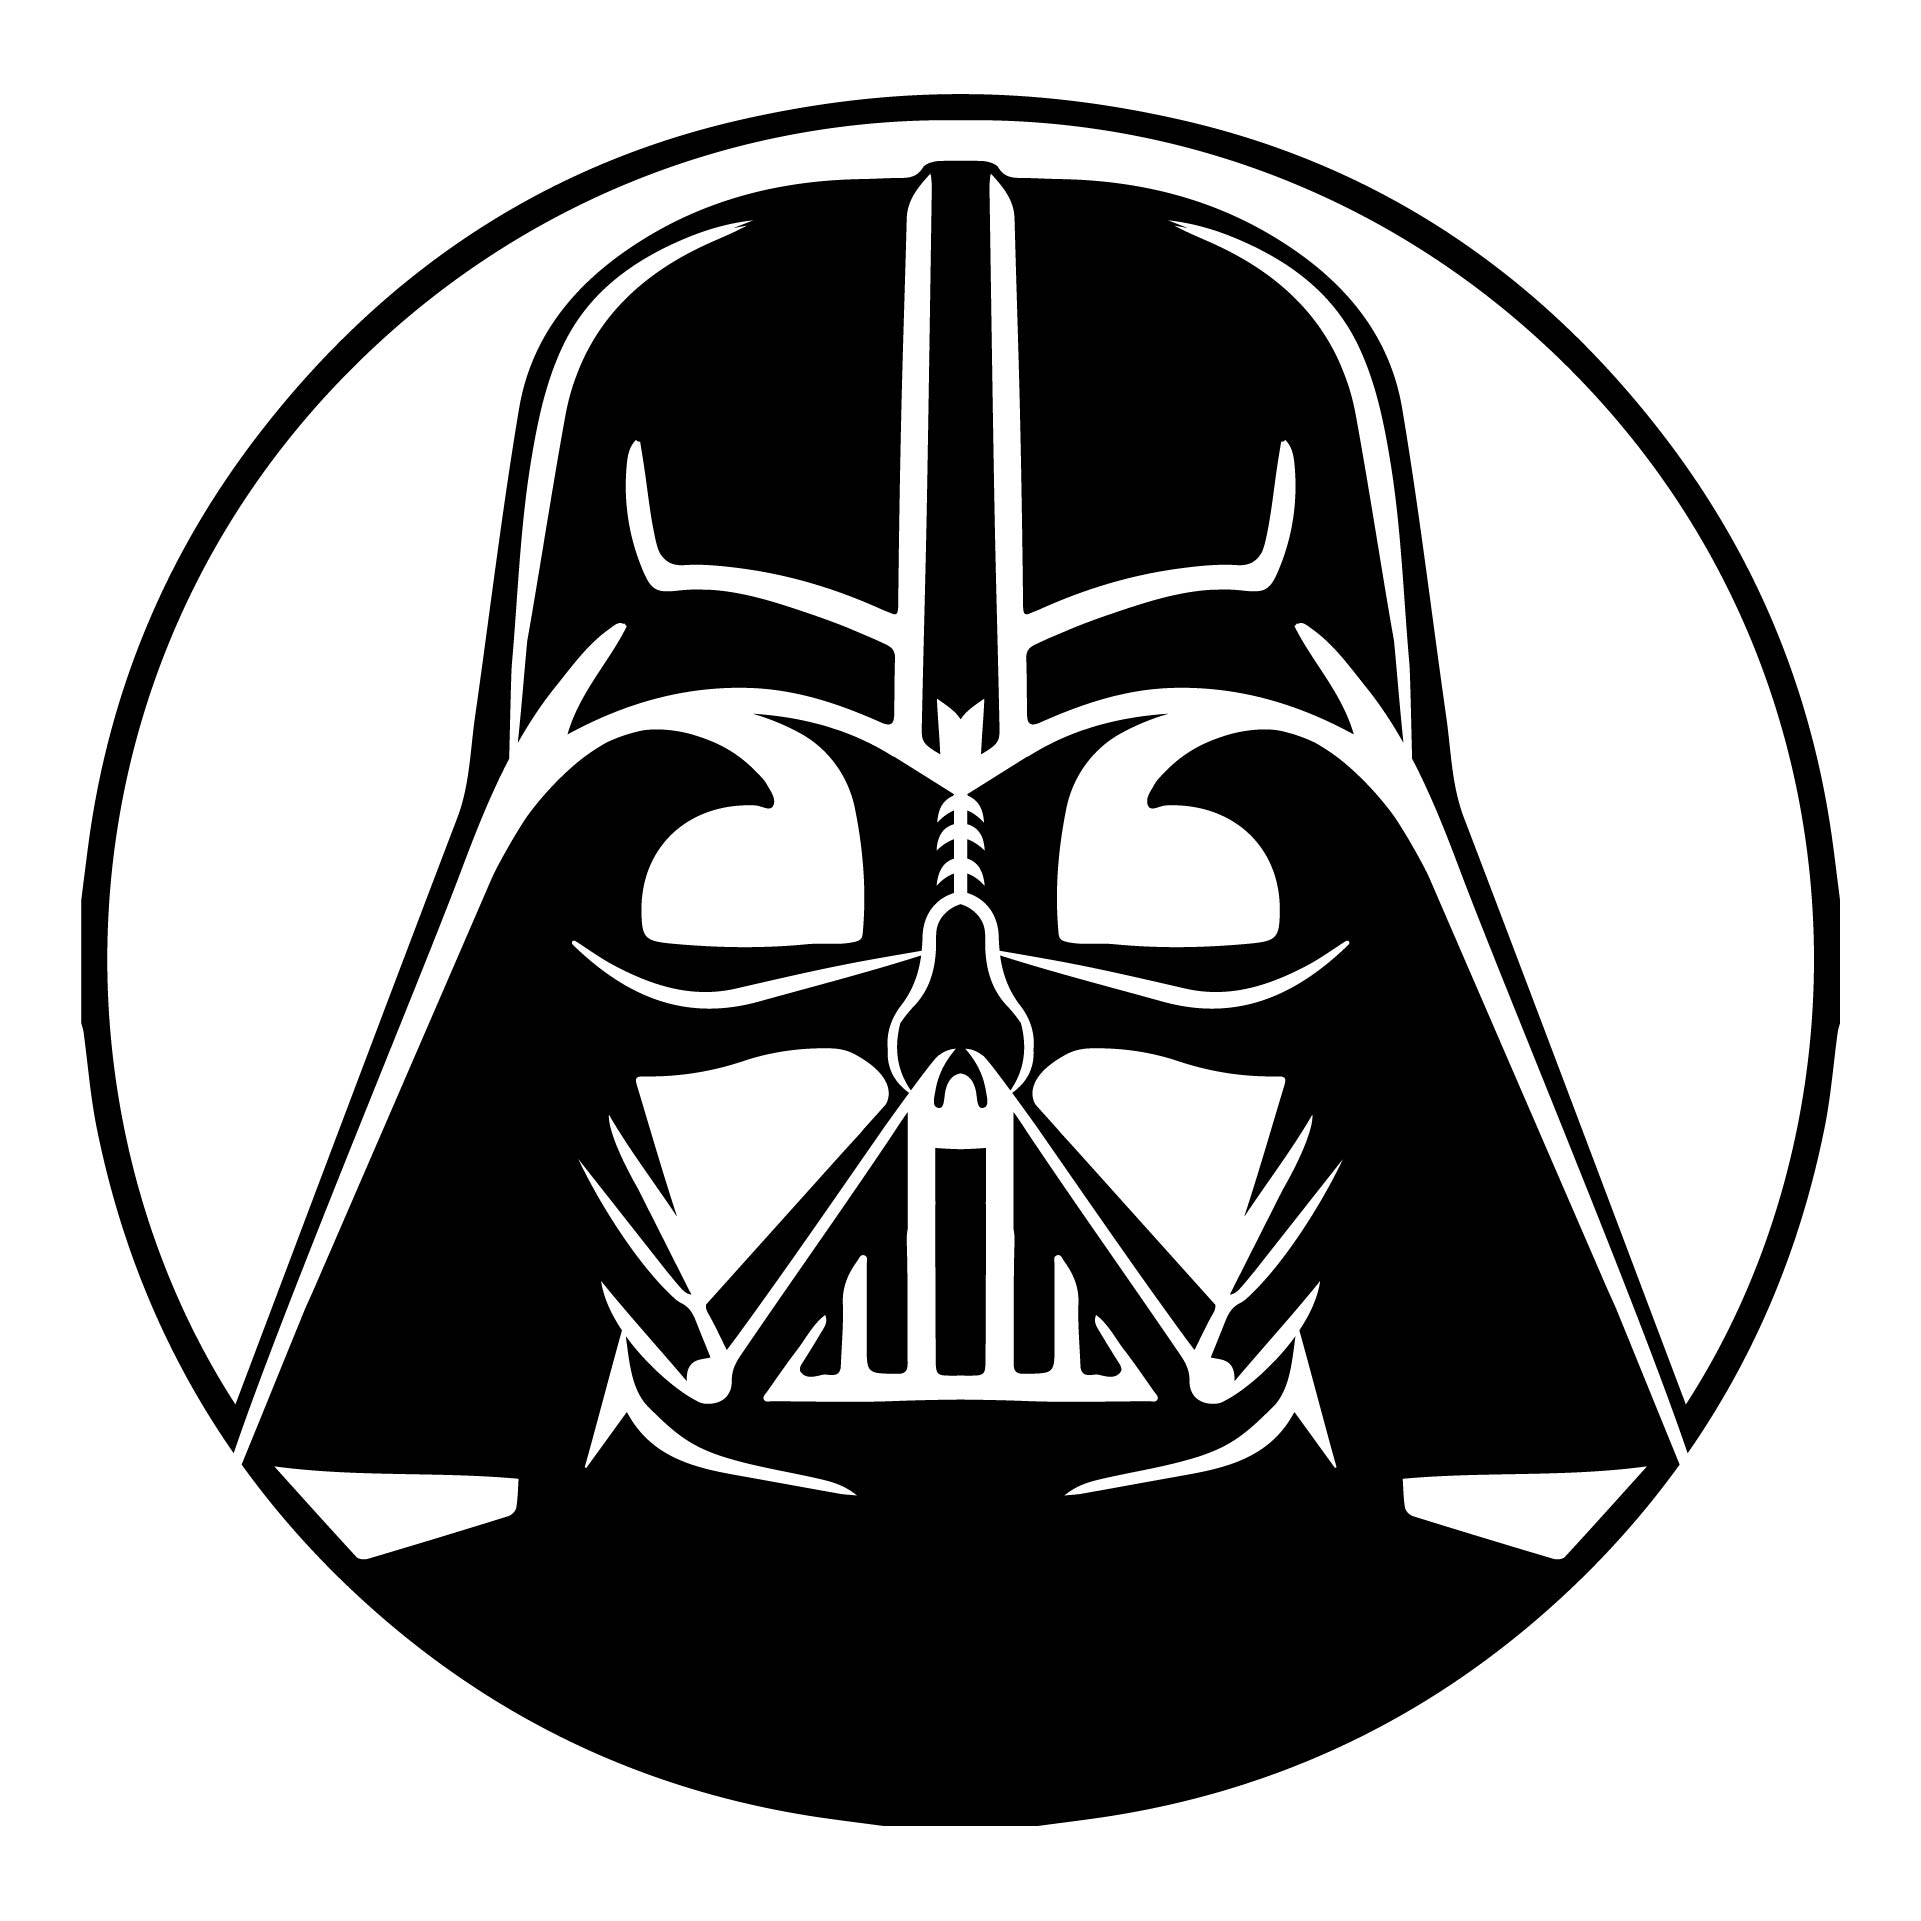 Star Wars Empire Stencils